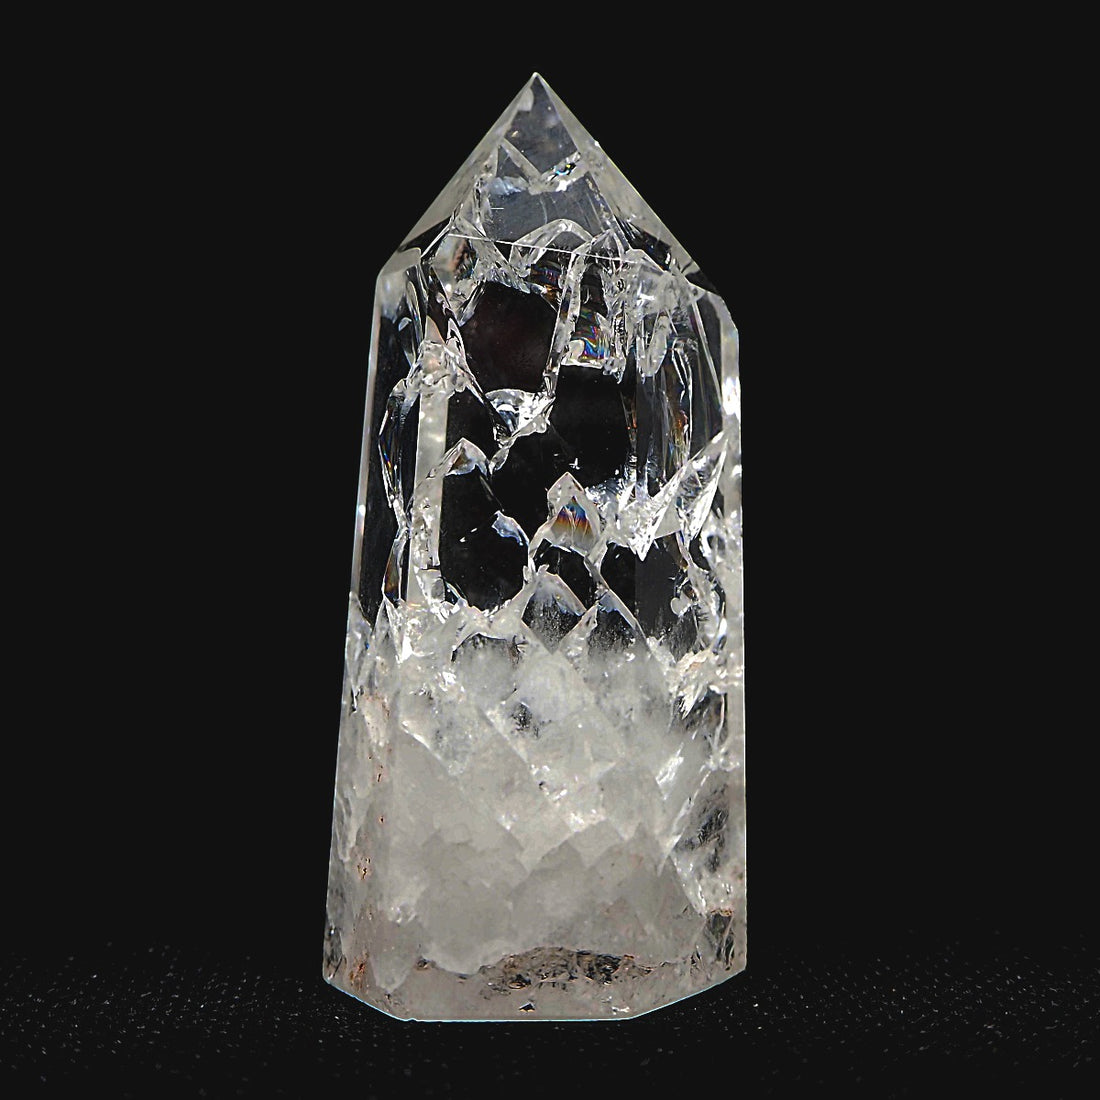 Cristallo di rocca, cristallo maestro | Significato e proprietà